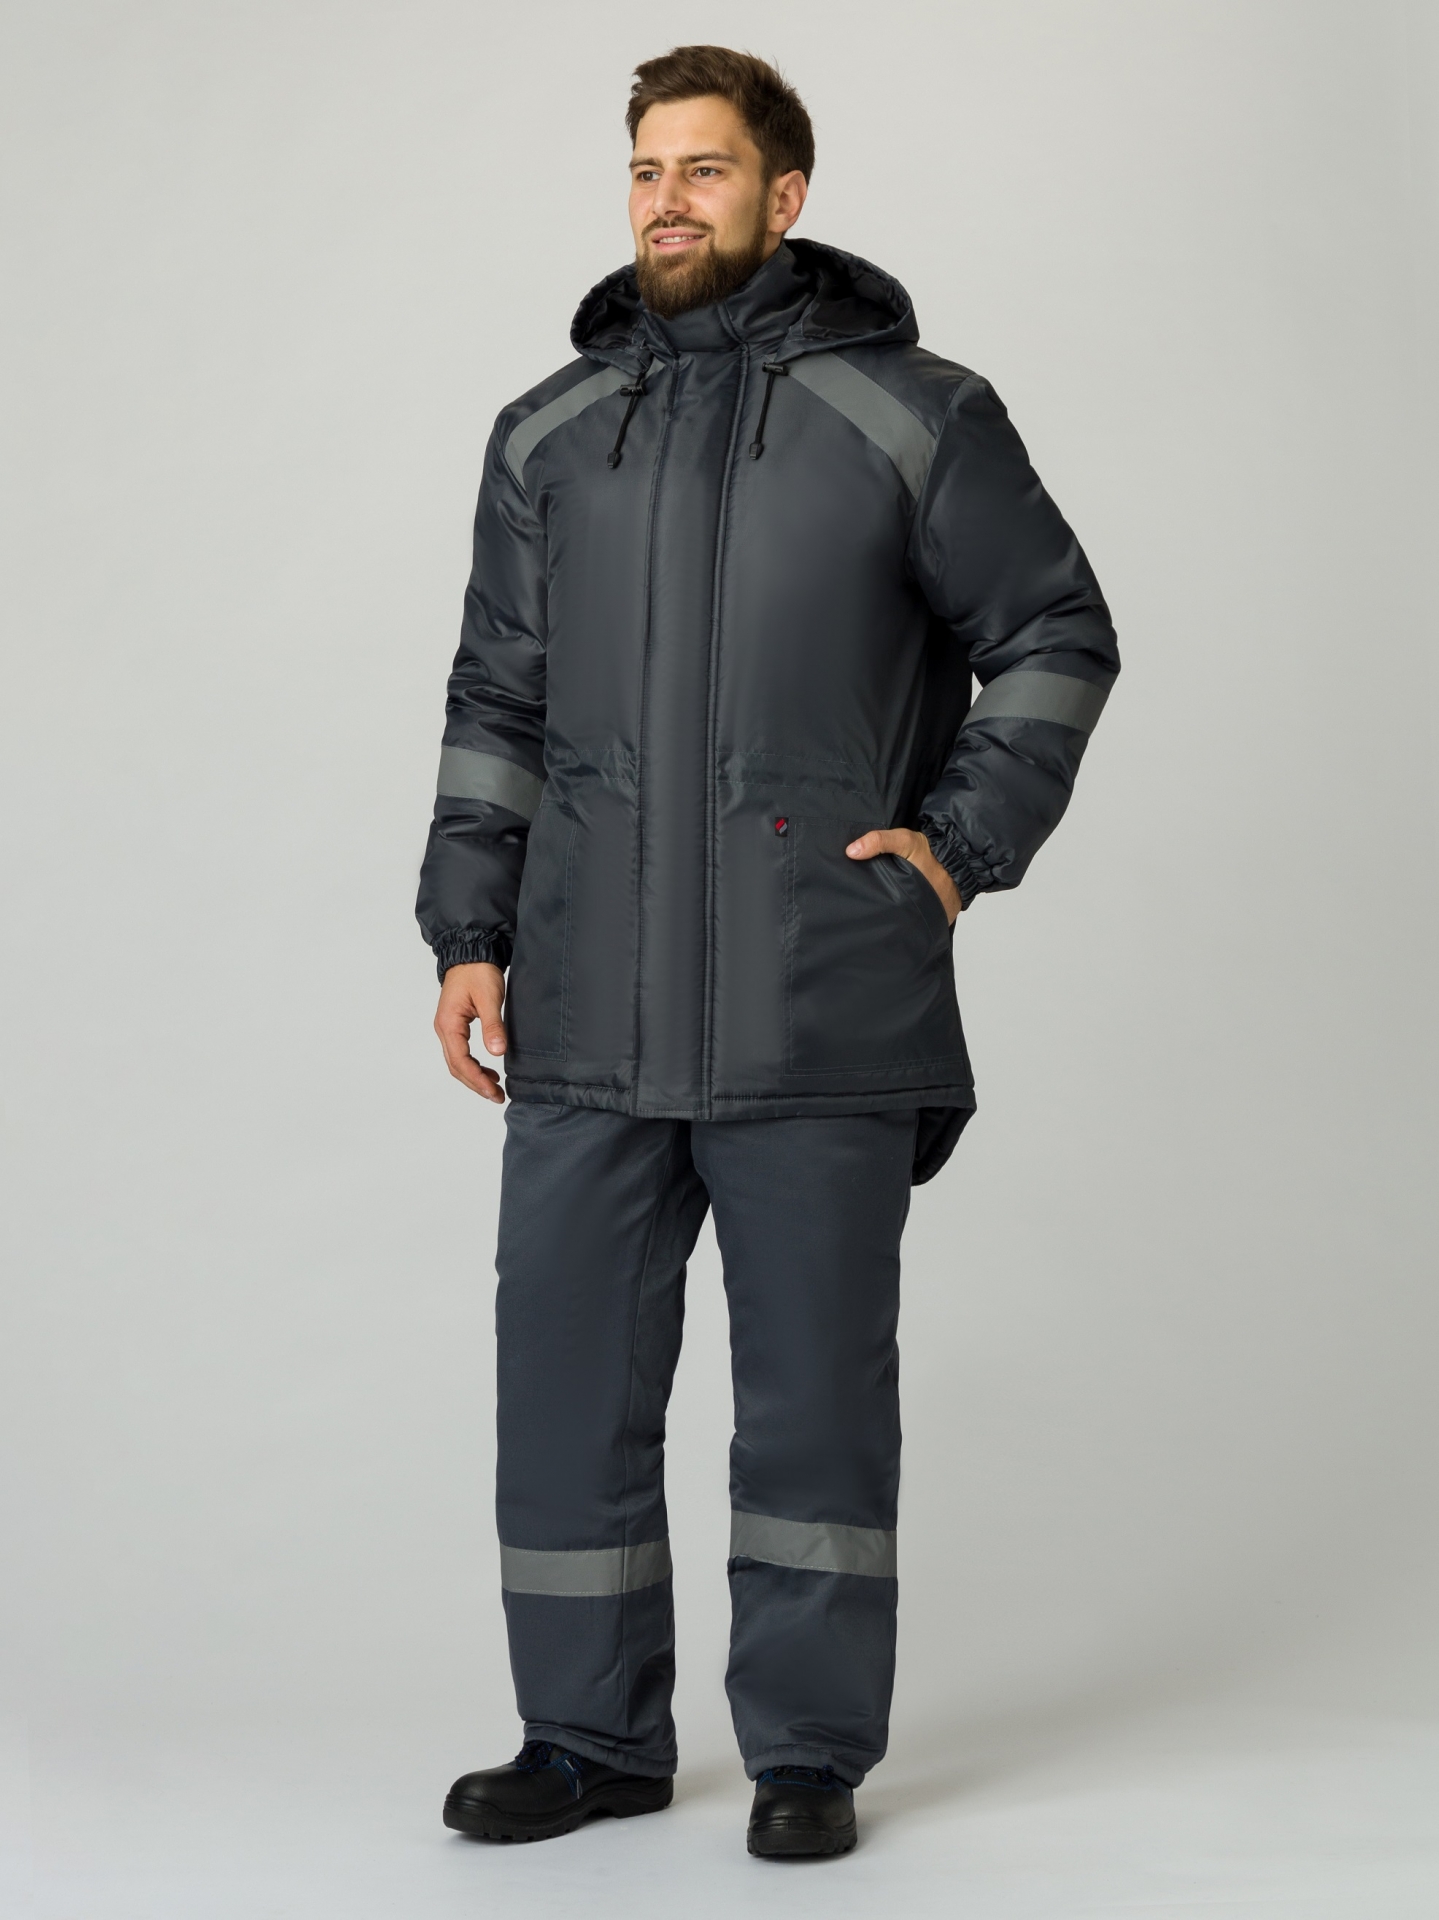 Зимняя куртка "ПРОГРЕСС" мужская, удлиненная, утепленная, цвет: тёмно-серый, ткань: Оксфорд